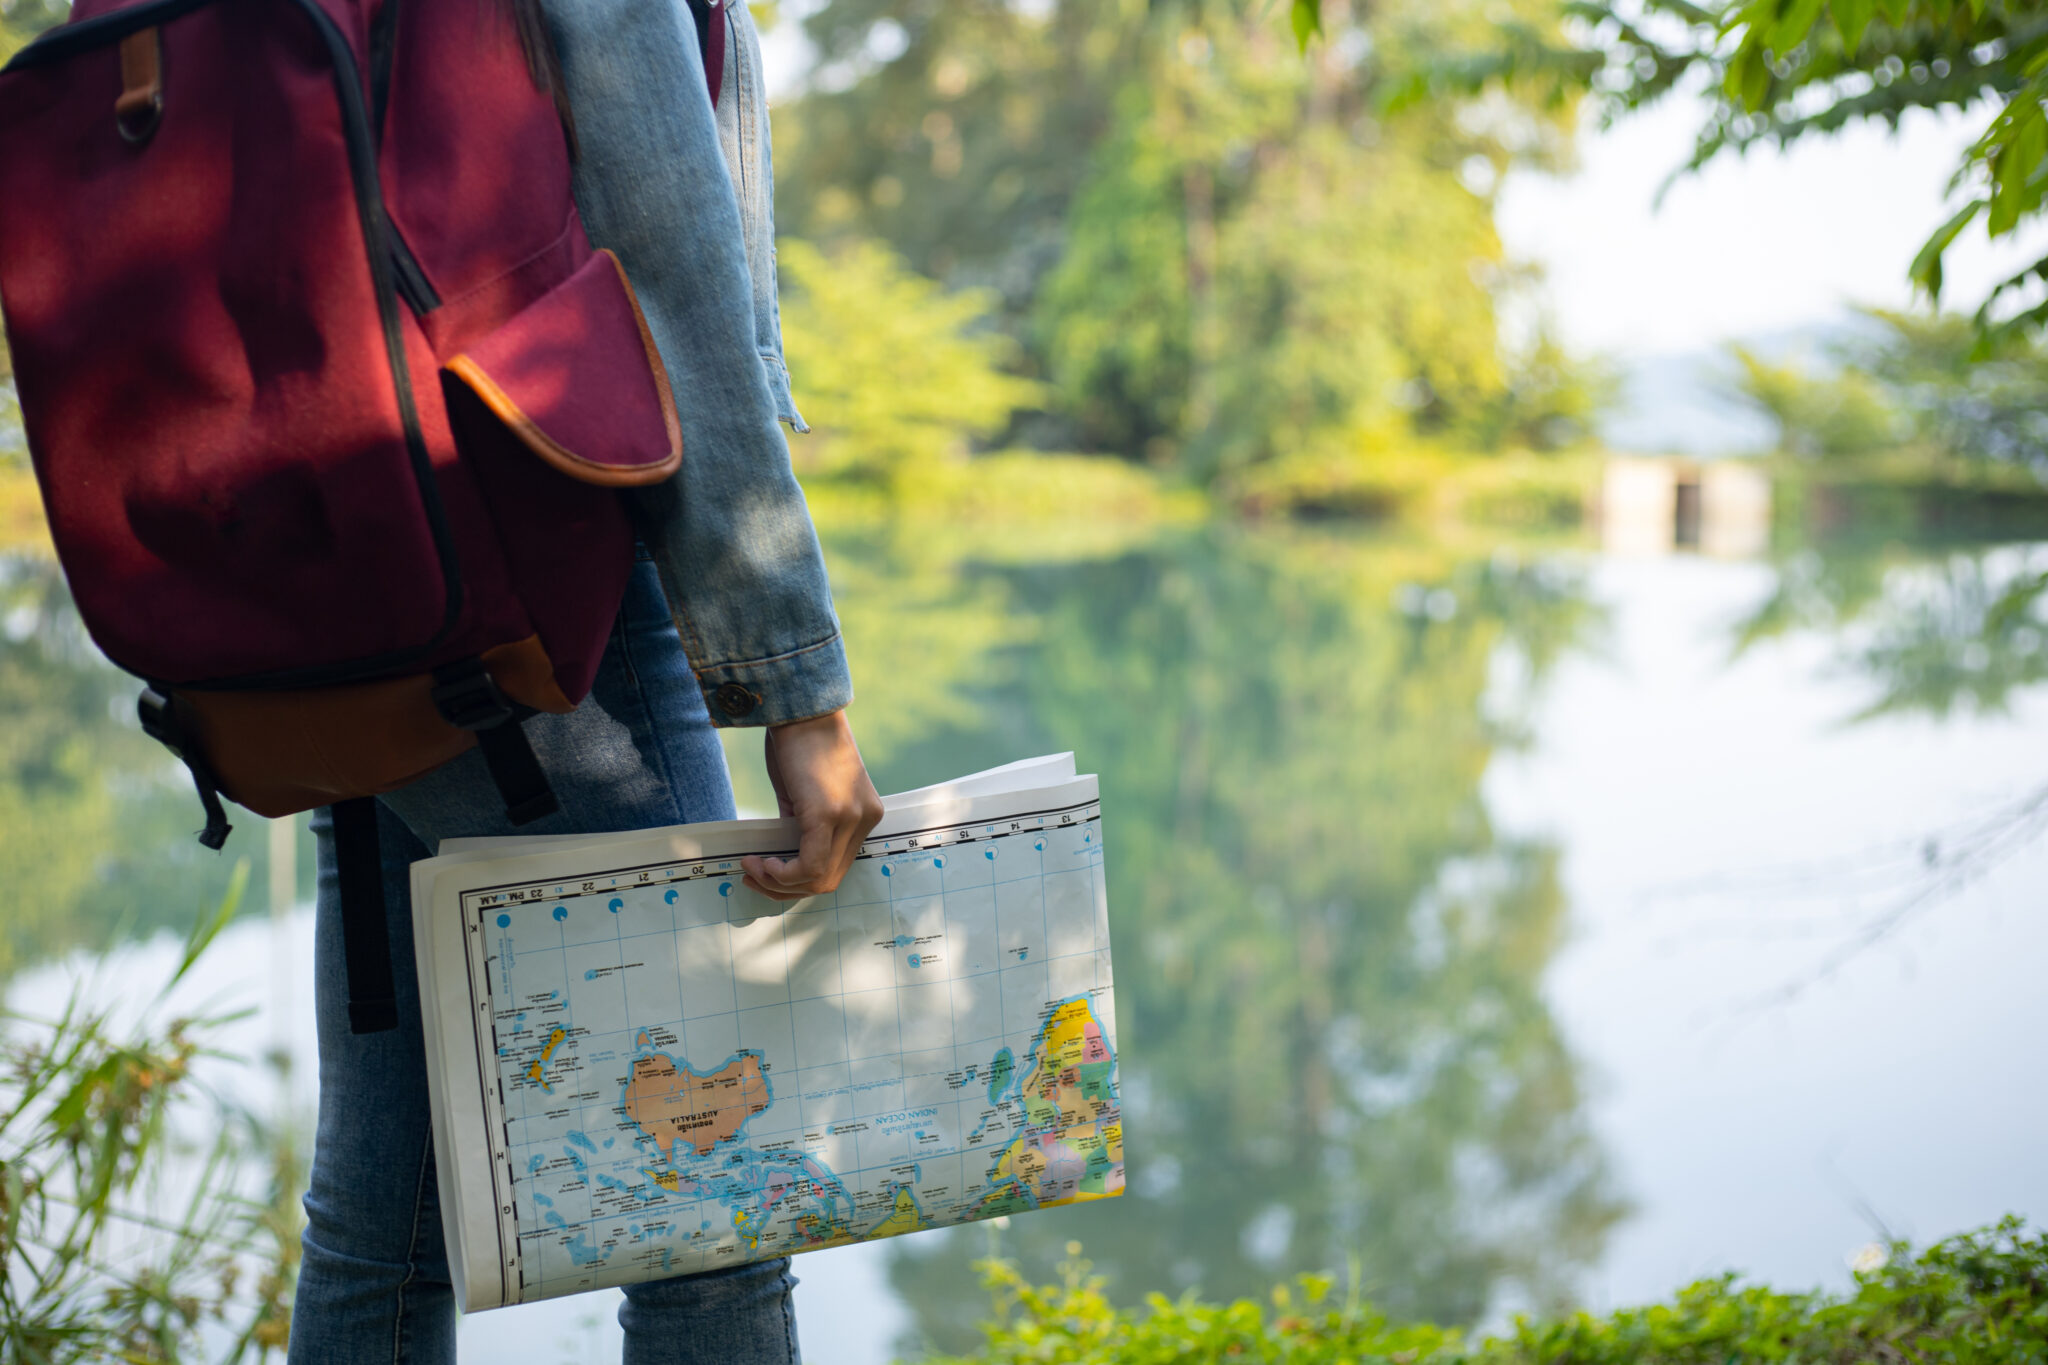 Dievča cestovateľka hľadá správny smer na mape. Objavte dobrodružstvo a zvedavosť pri cestovaní s mladou cestovateľkou, ktorá sa snaží nájsť správnu cestu pre ekologické prostredie.